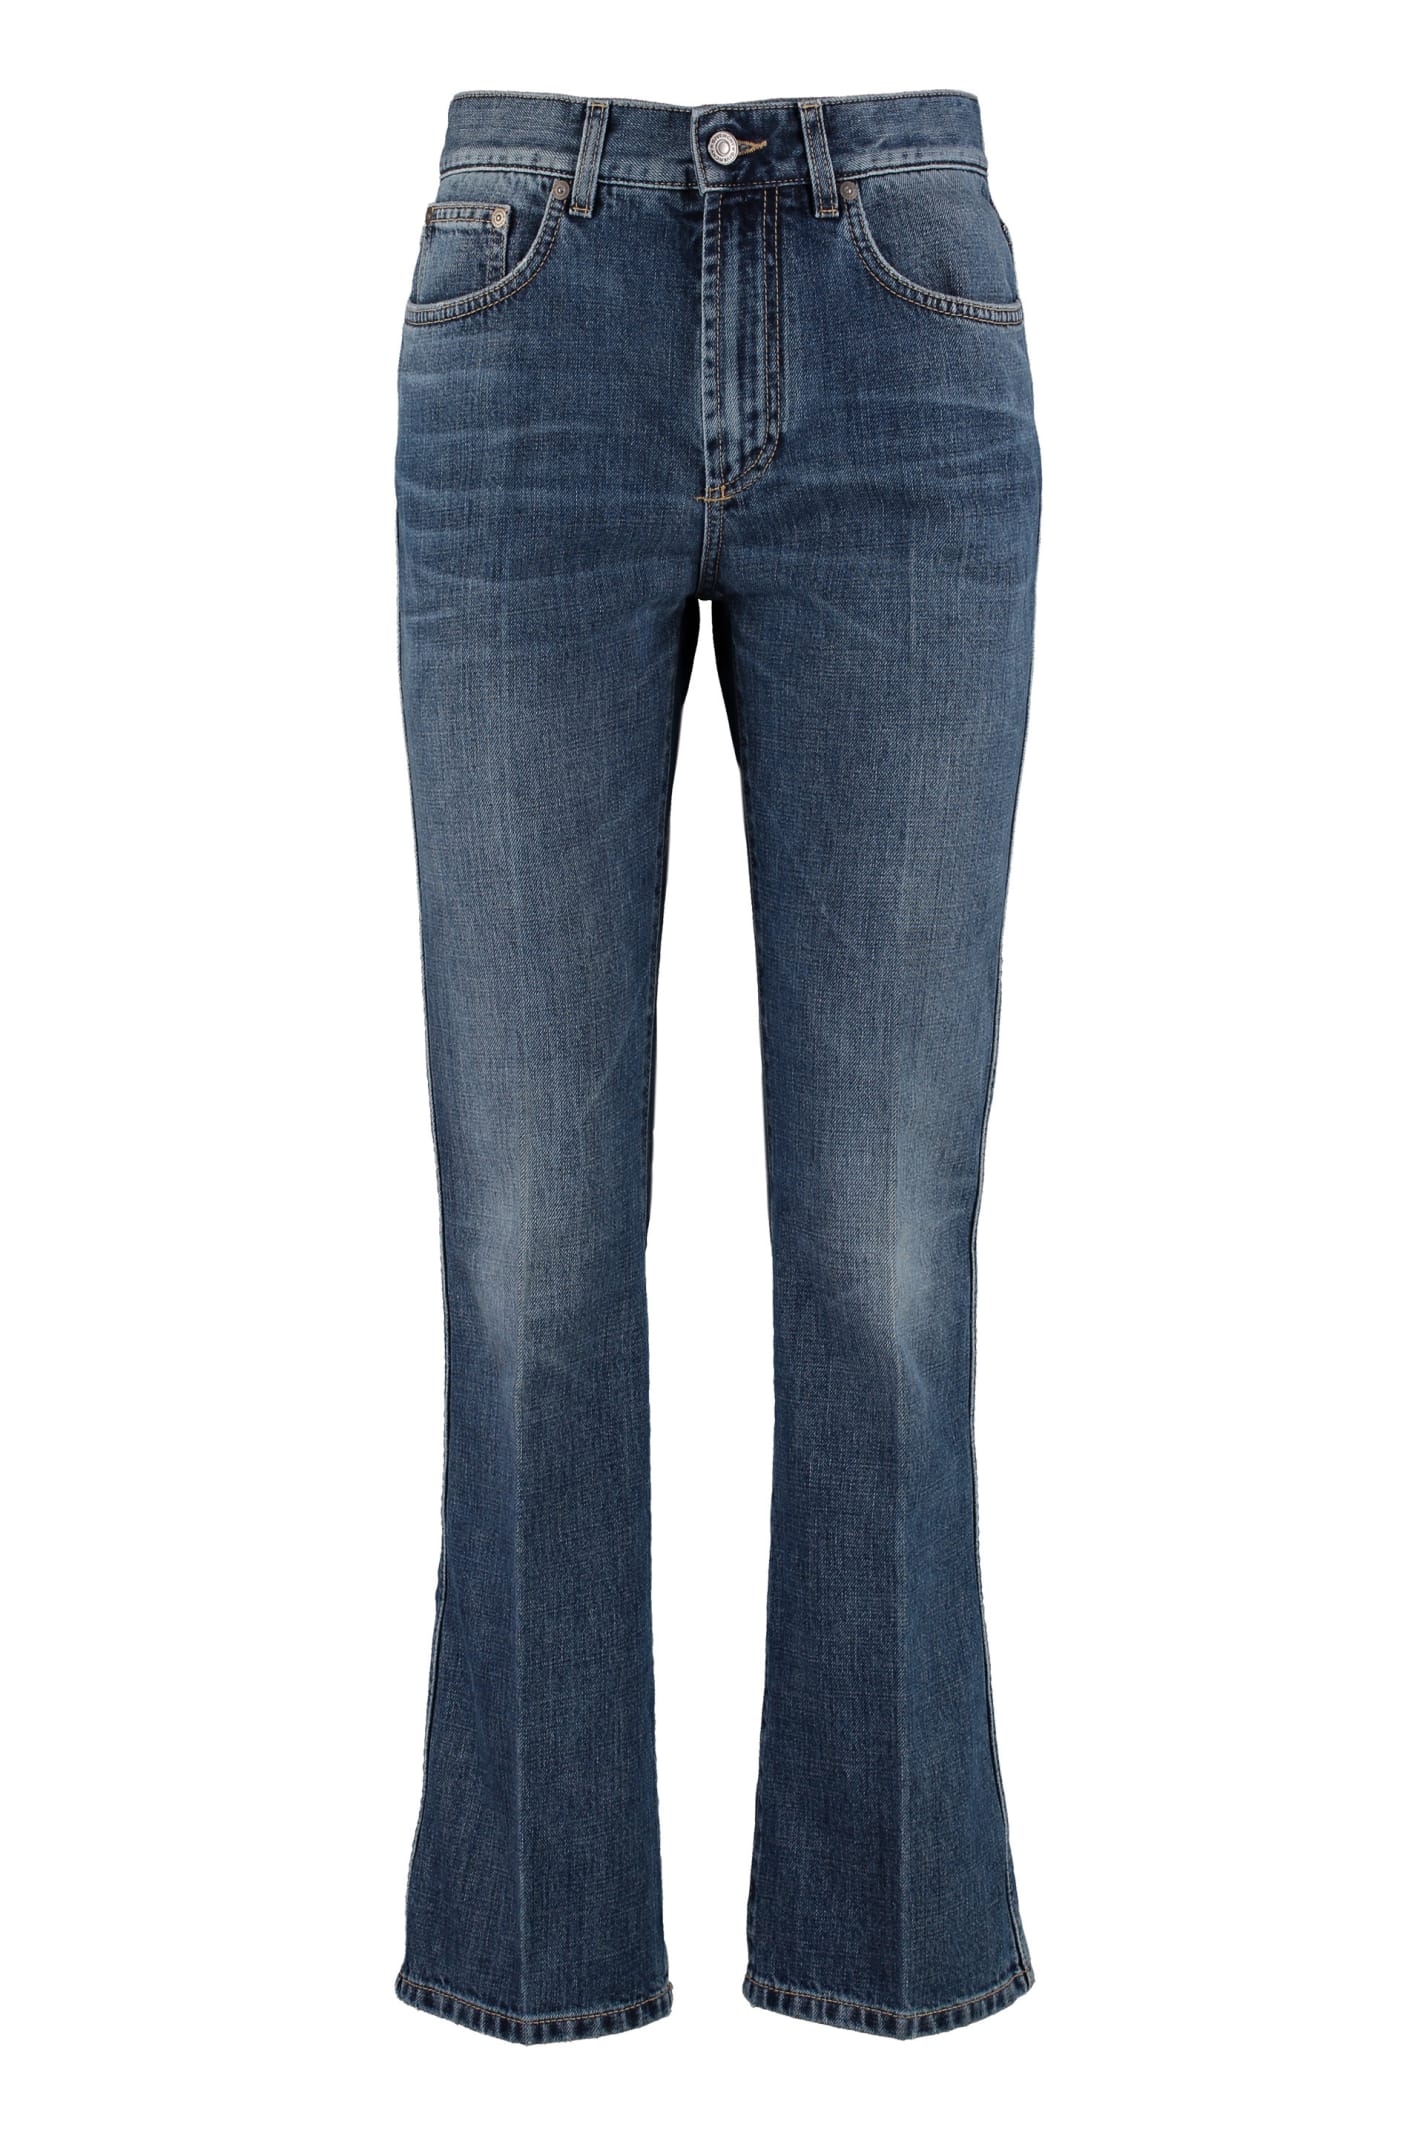 Givenchy 5-pocket Slim Fit Jeans In Denim